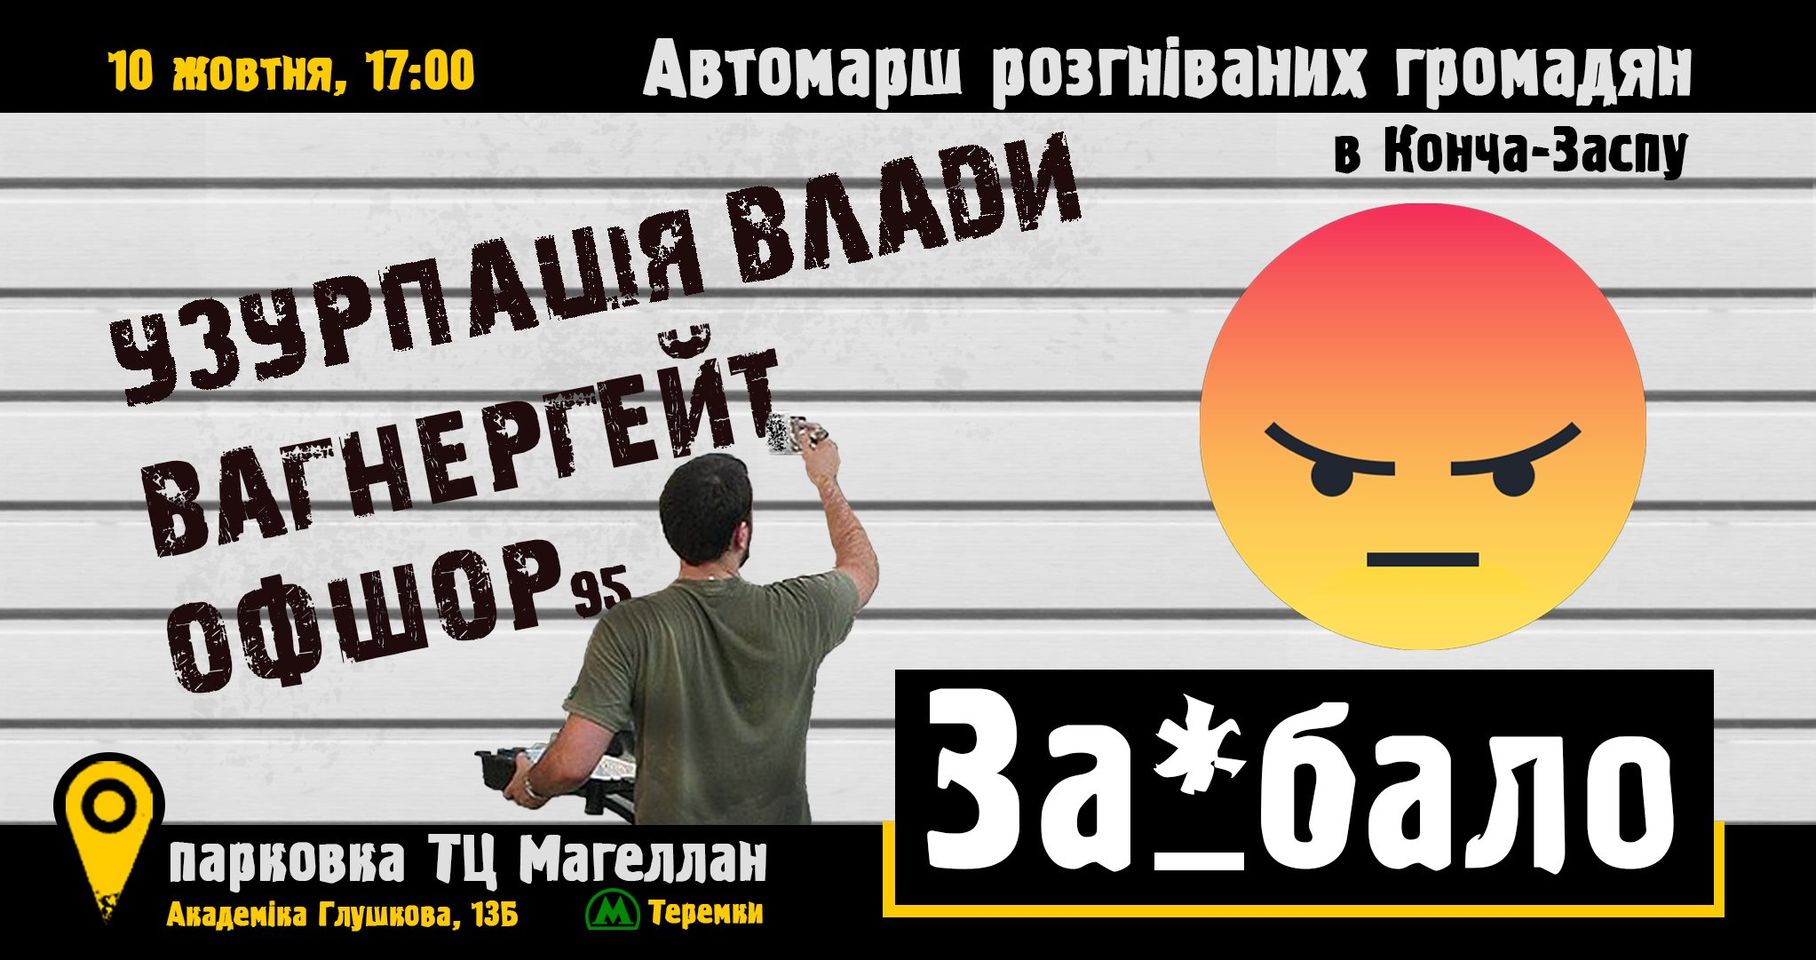 "За#бало", – активісти анонсували автопробіг до Зеленського в Конча-Заспу 10 жовтня